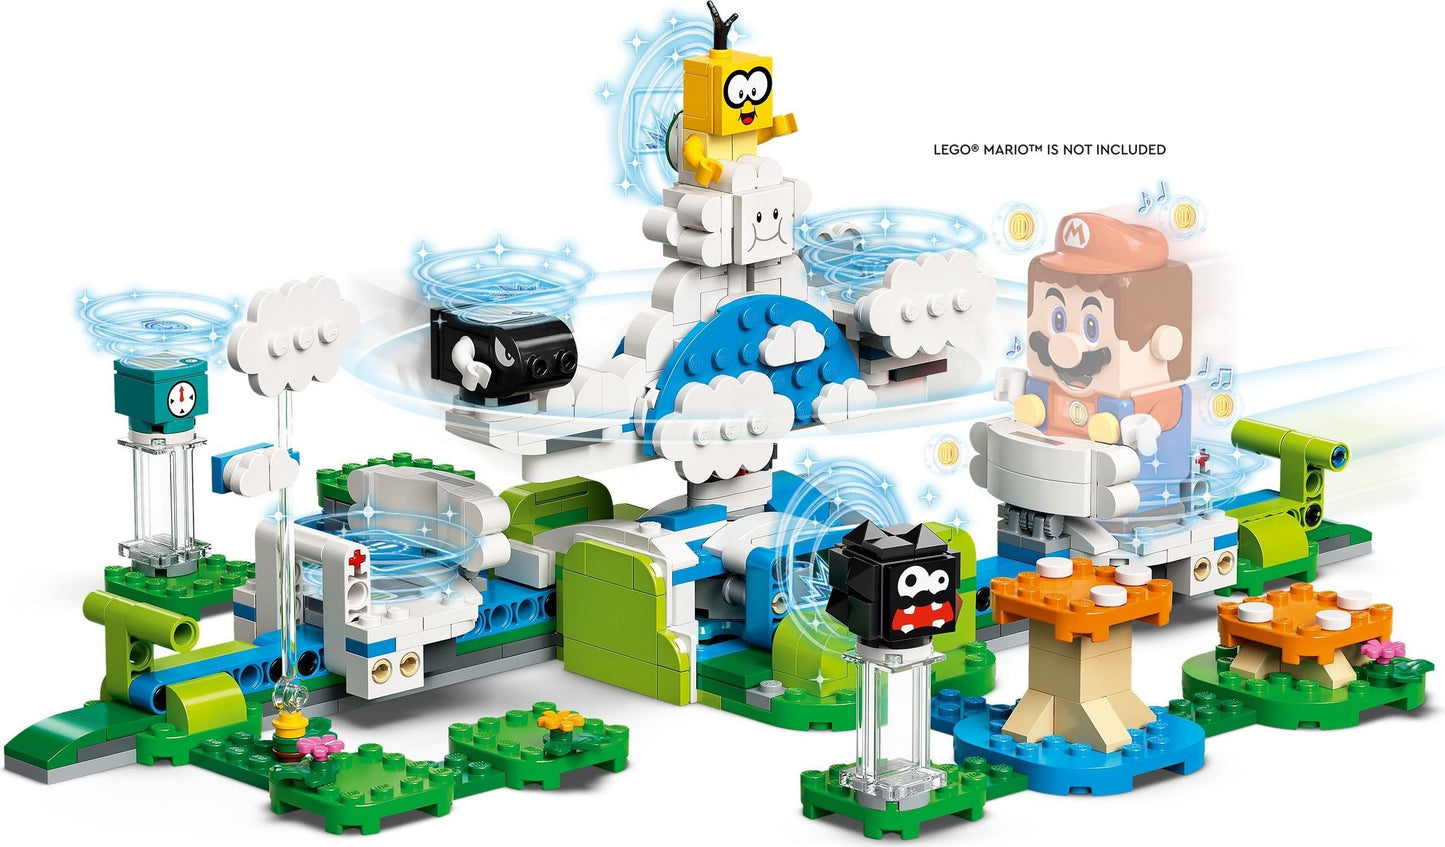 LEGO Super Mario, Set de extindere - Lumea din cer a lui Lasetu 71389, 484 piese